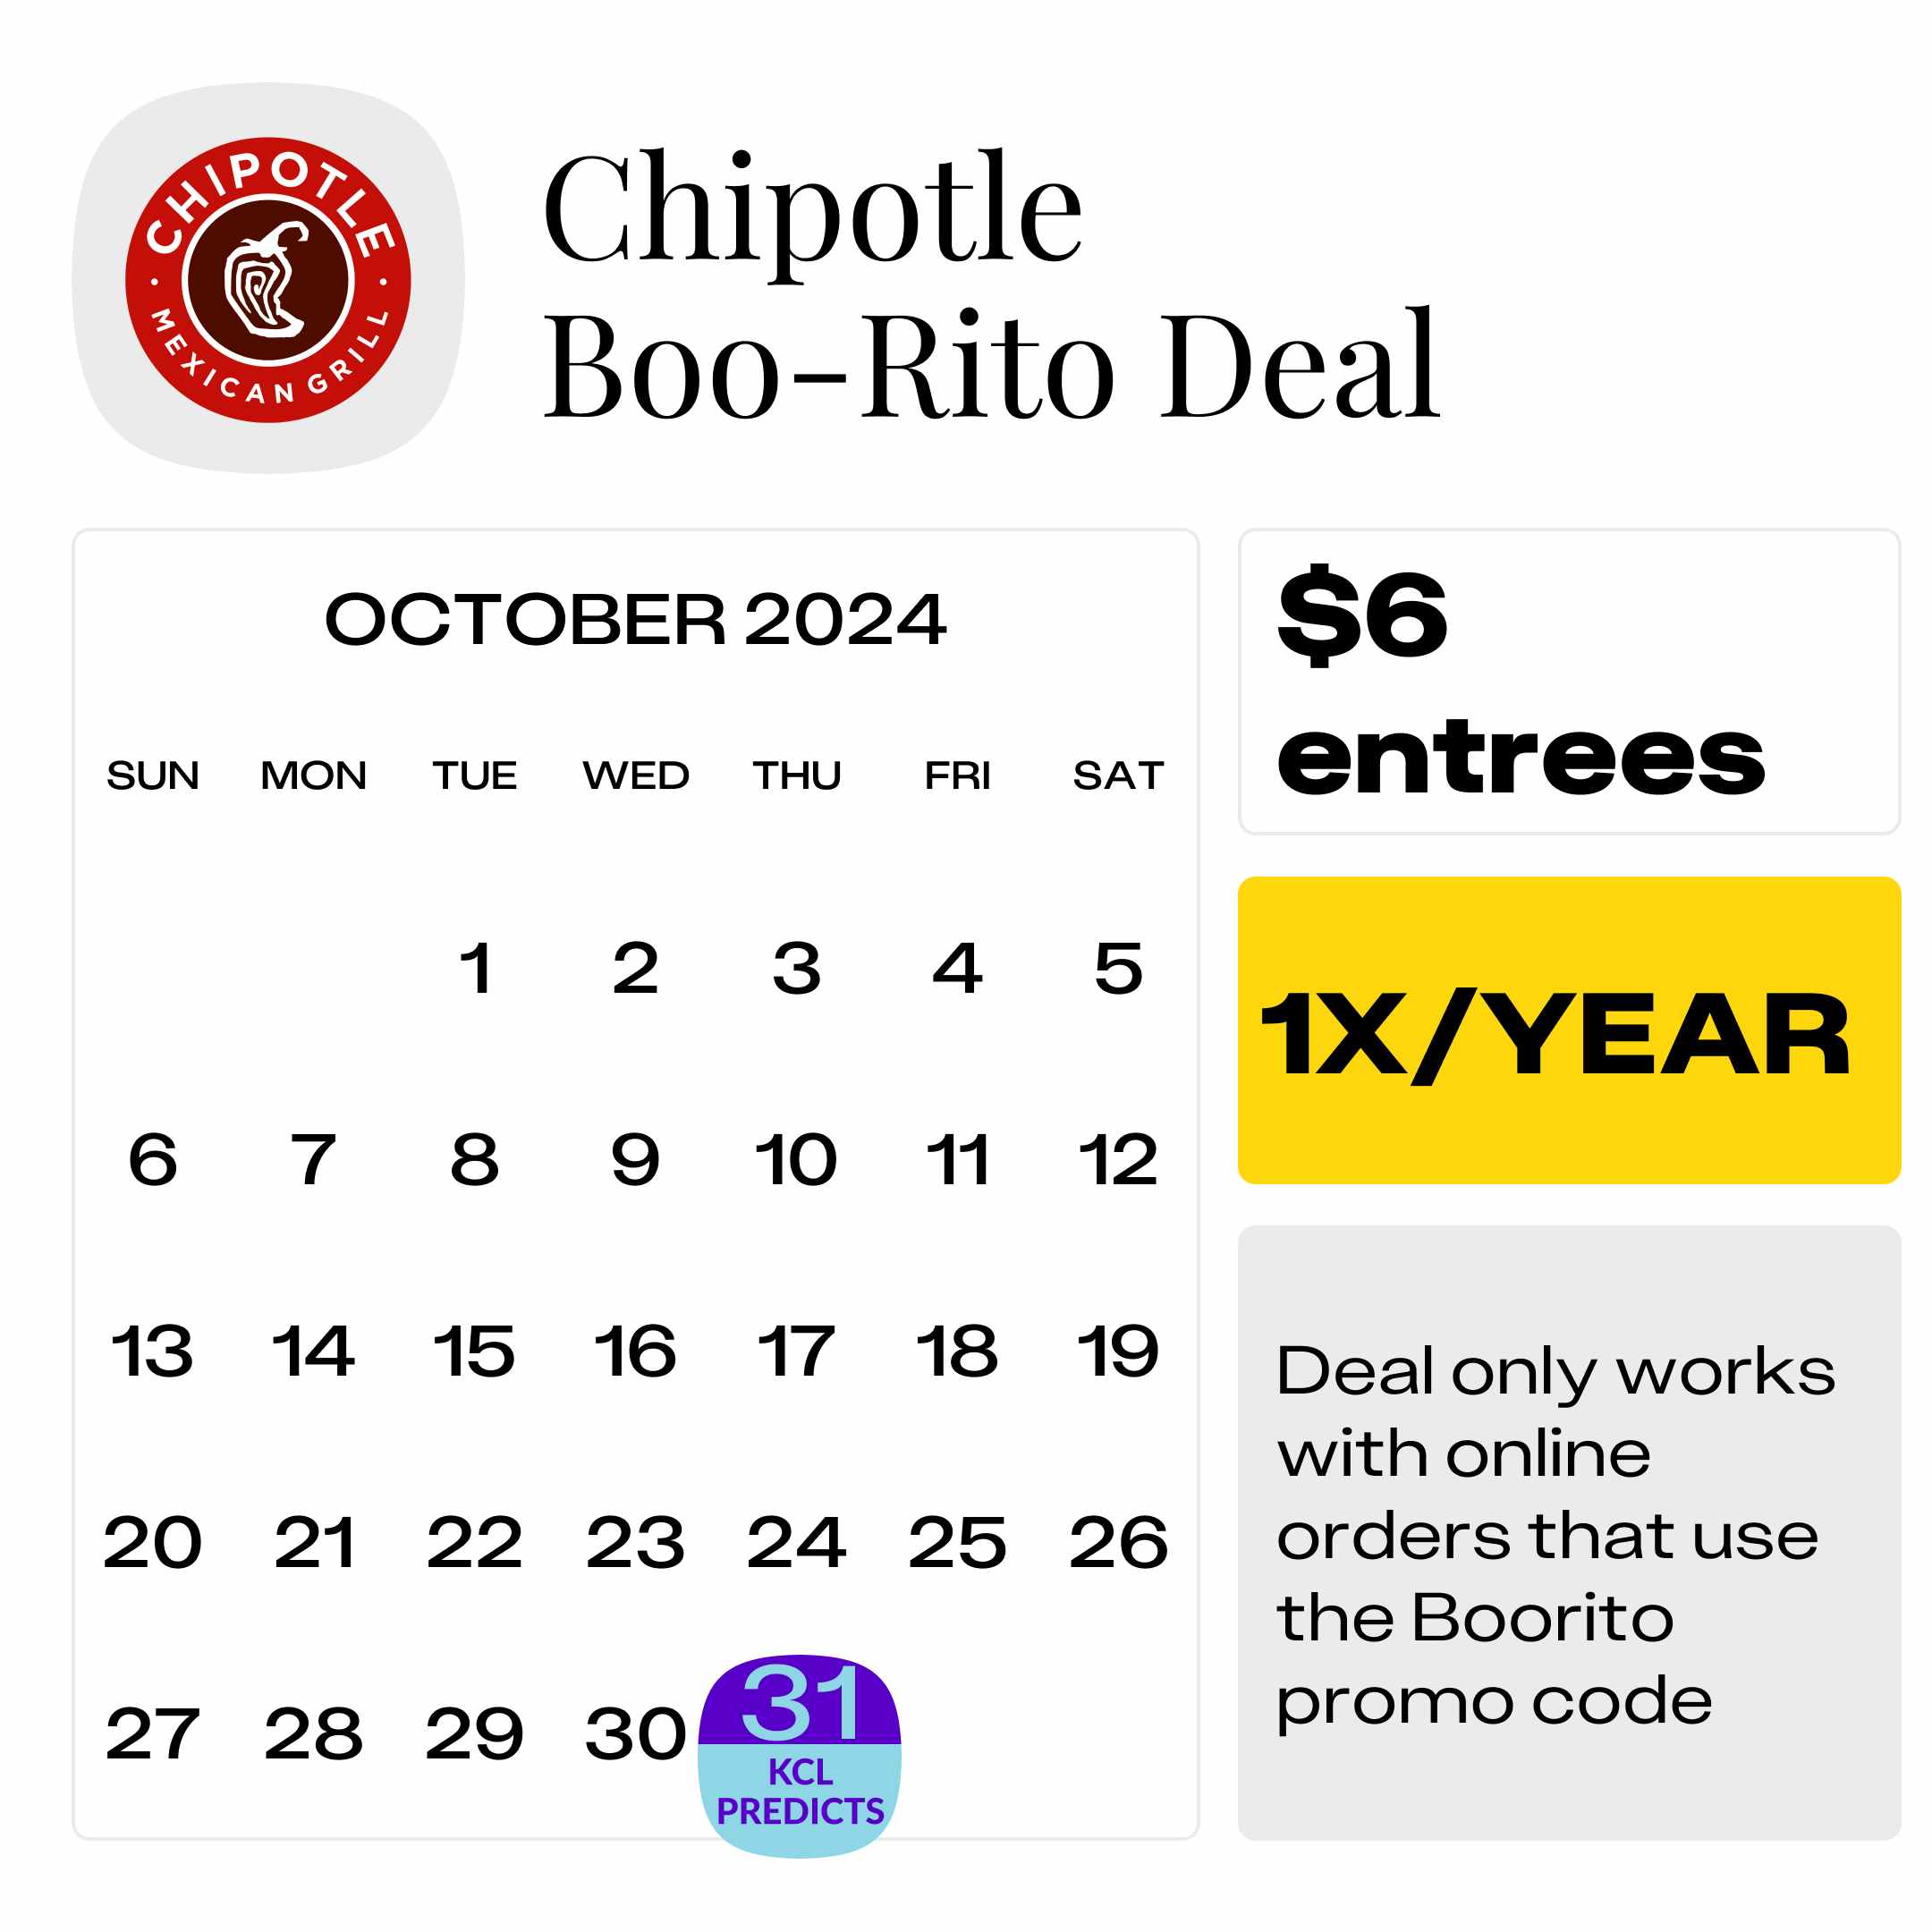 Chipotle-Boo-Rito-Deal